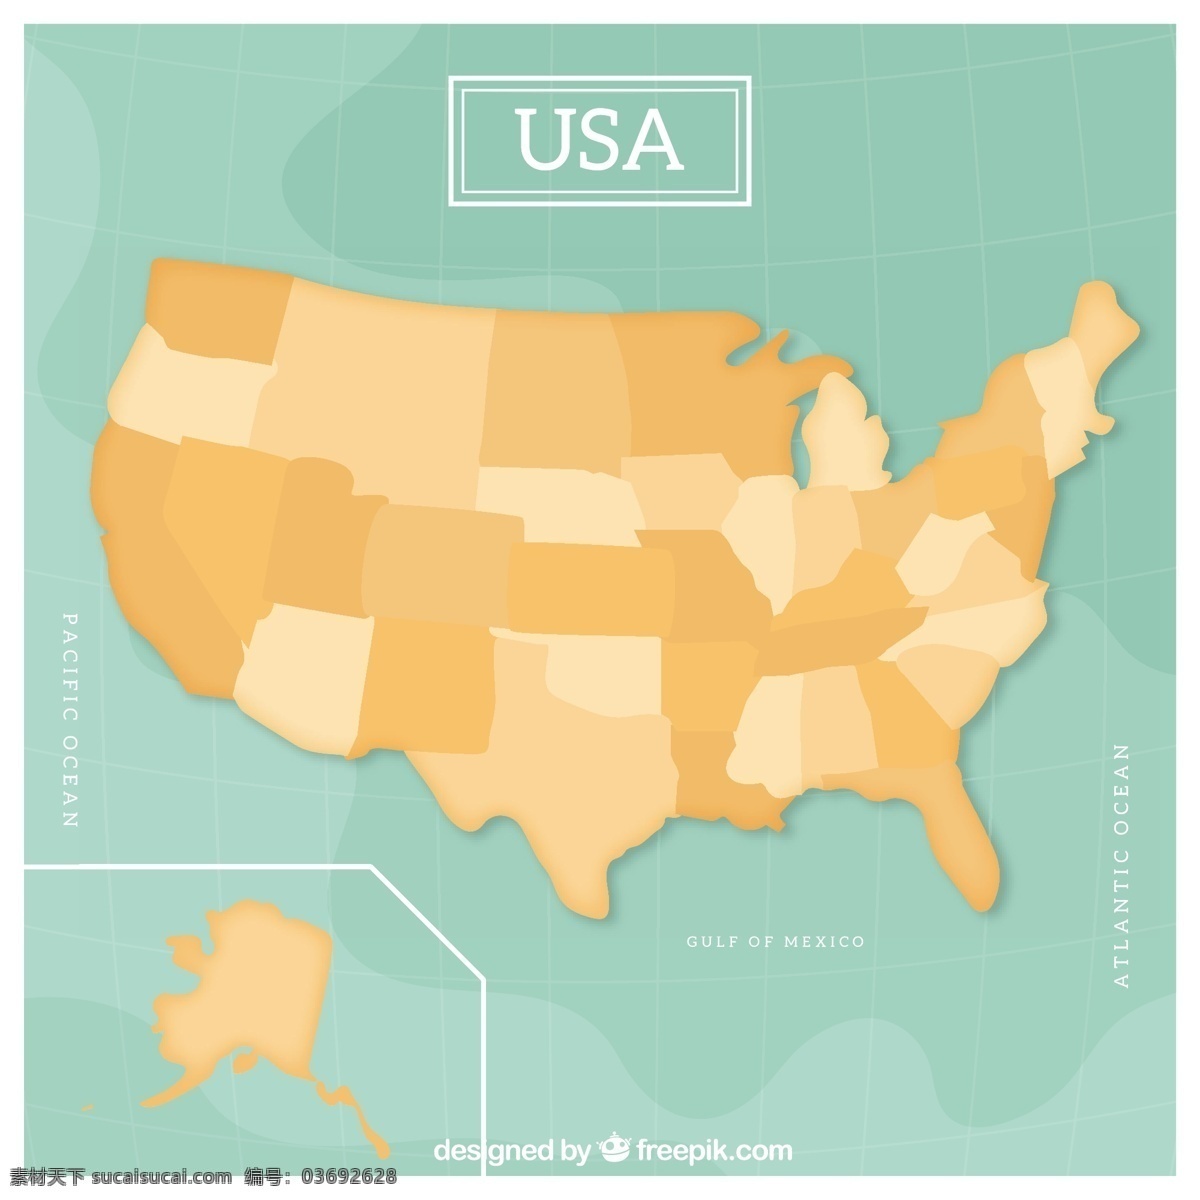 蓝色 背景 美国 地图 矢量 蓝色背景 美国地图 矢量素材